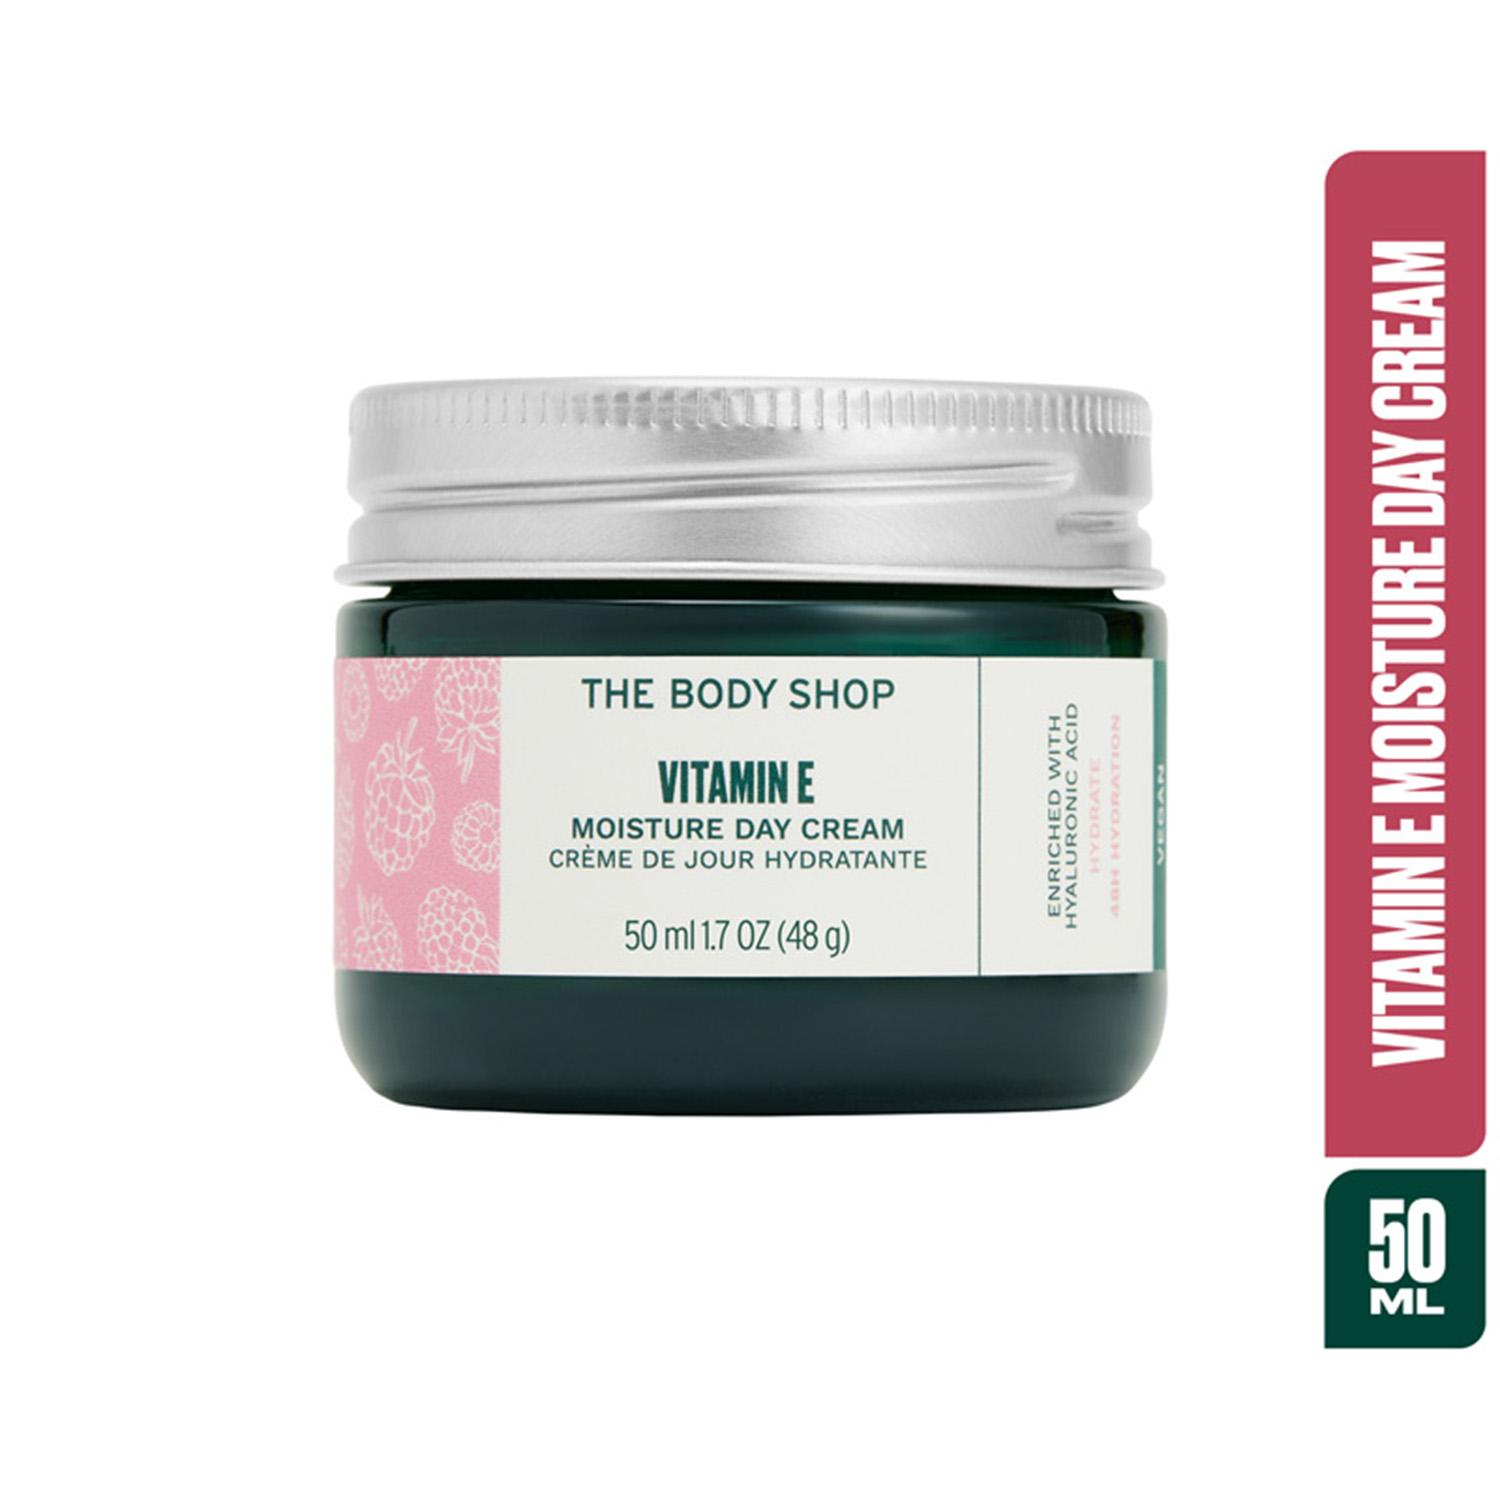 The Body Shop | The Body Shop Vitamin E Moisture Cream (100ml)